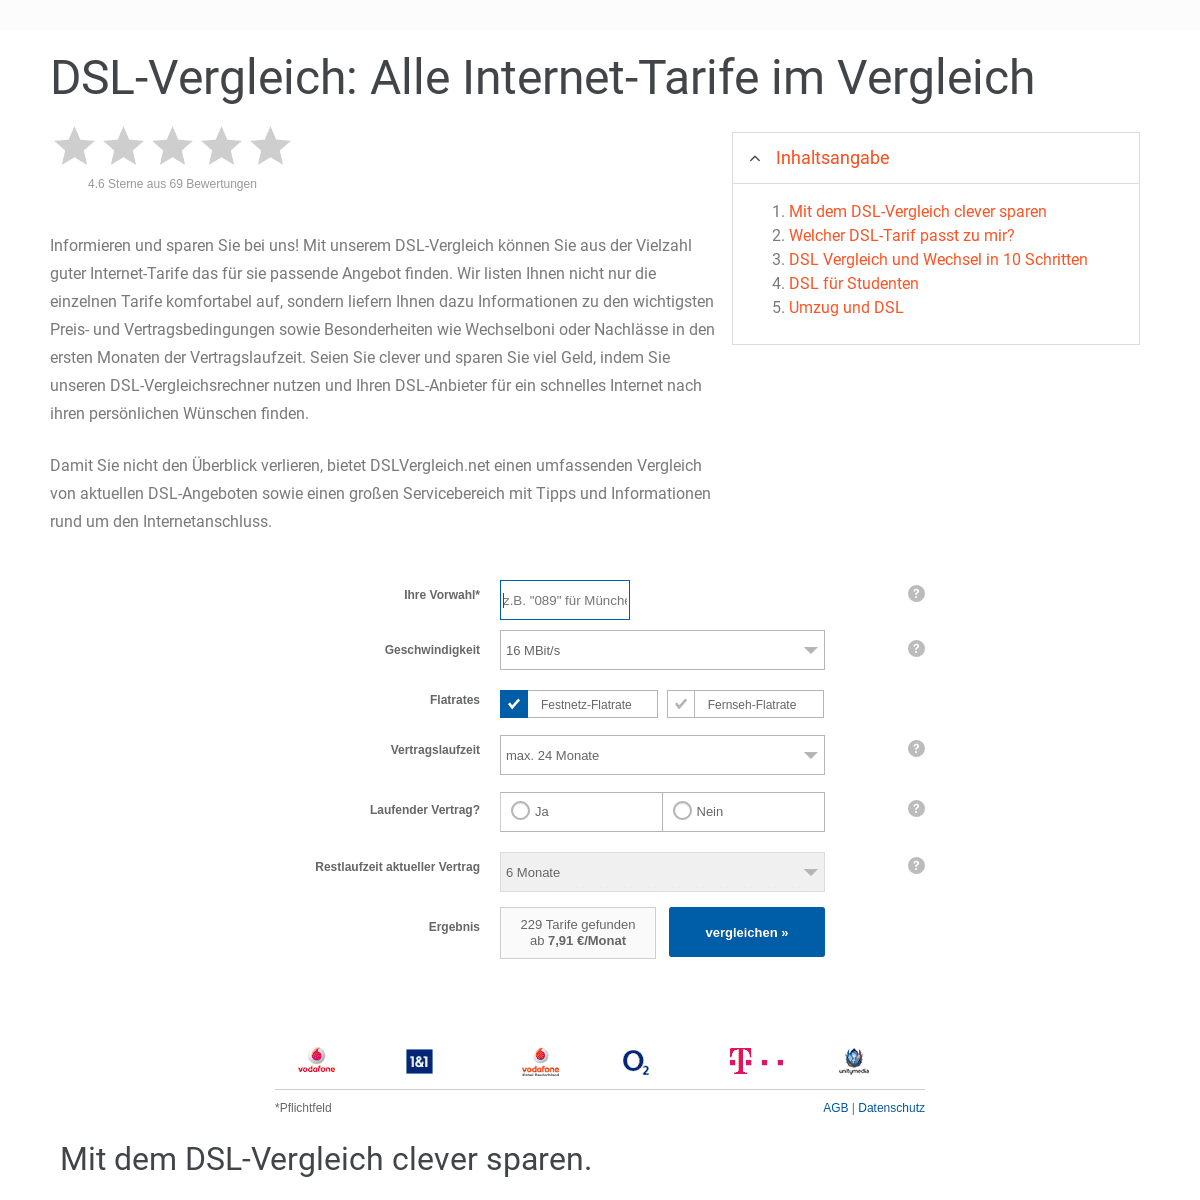 DSL-Vergleich: Vergleichen Sie sich jetzt zum günstigsten DSL-Tarif